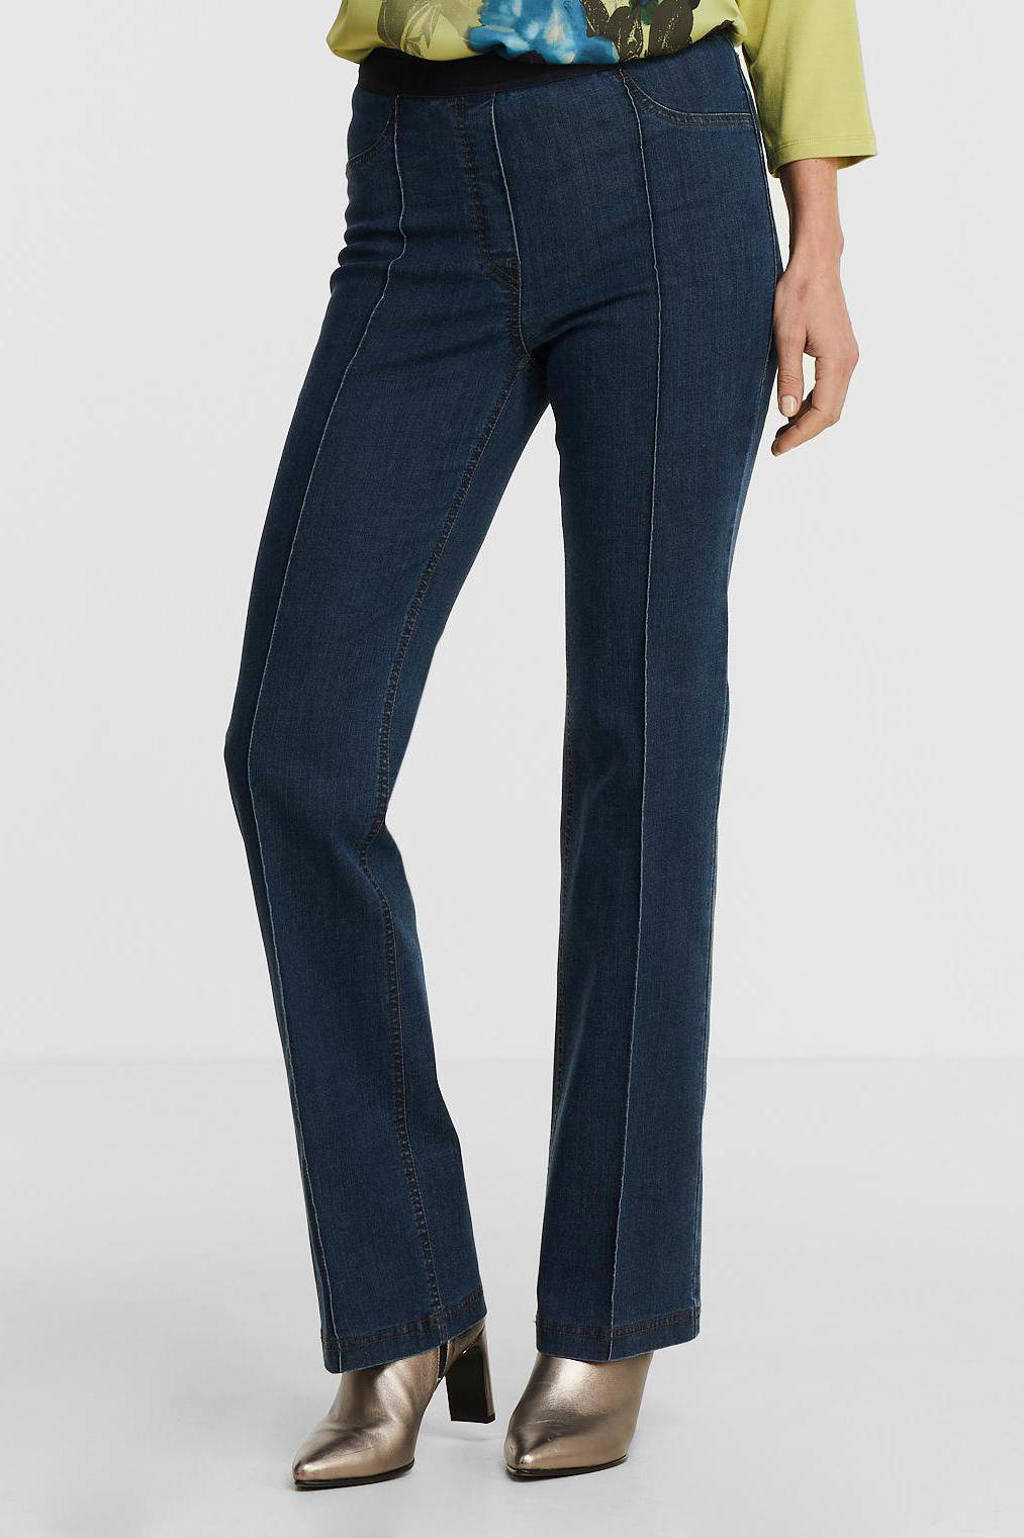 Donkerblauwe dames gardeur flared jeans Zilla van duurzaam stretchdenim met regular waist en elastische tailleband